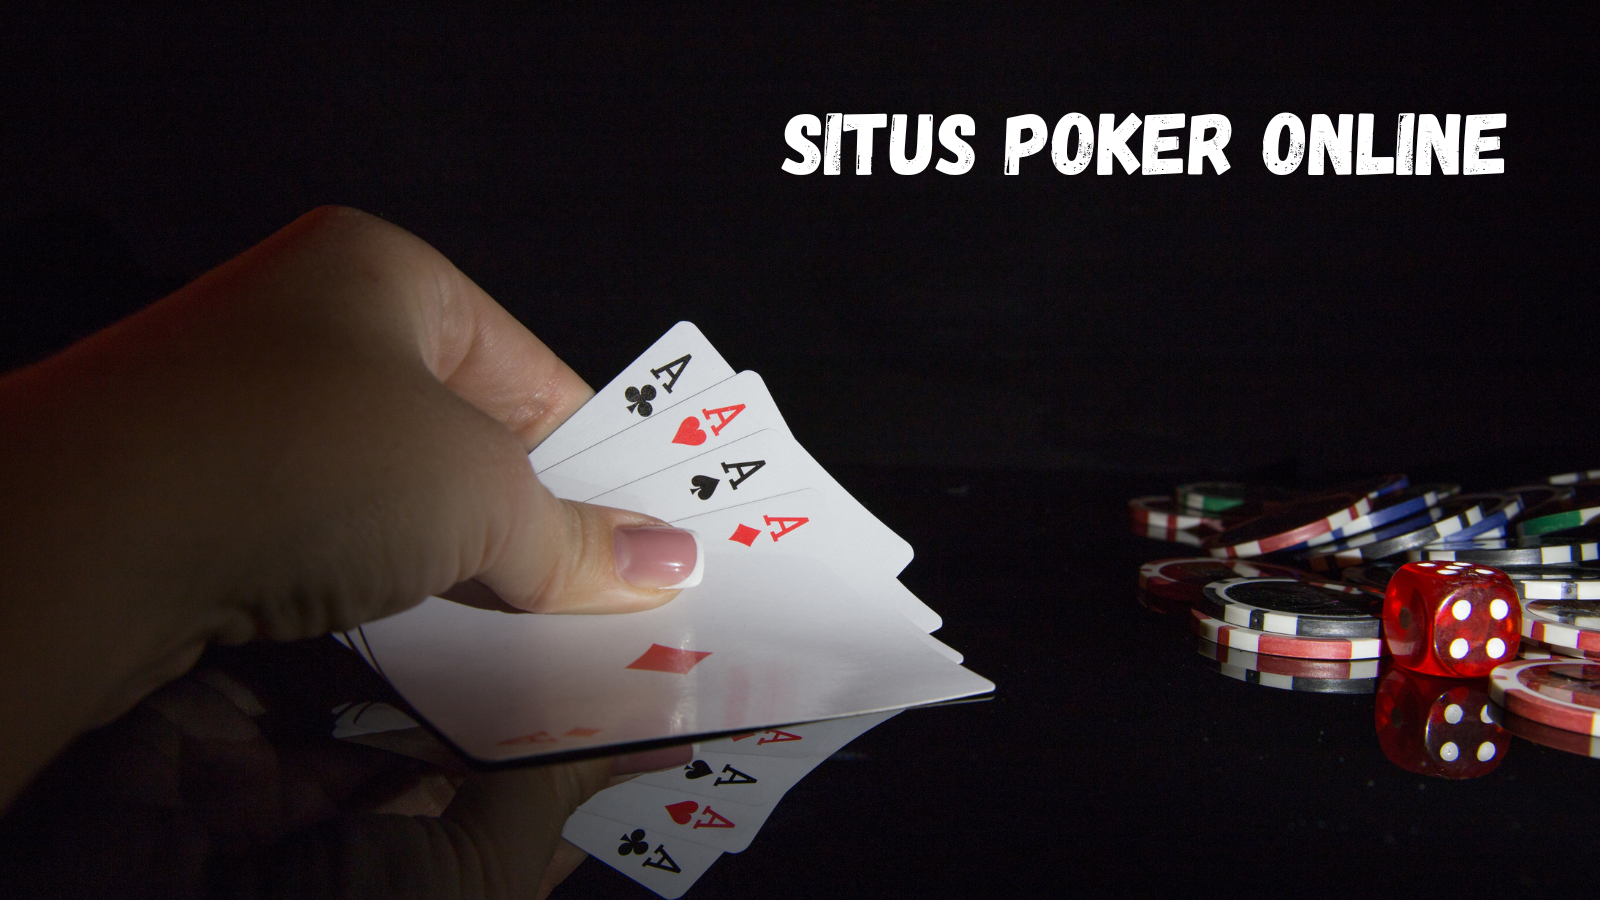 situs poker online image